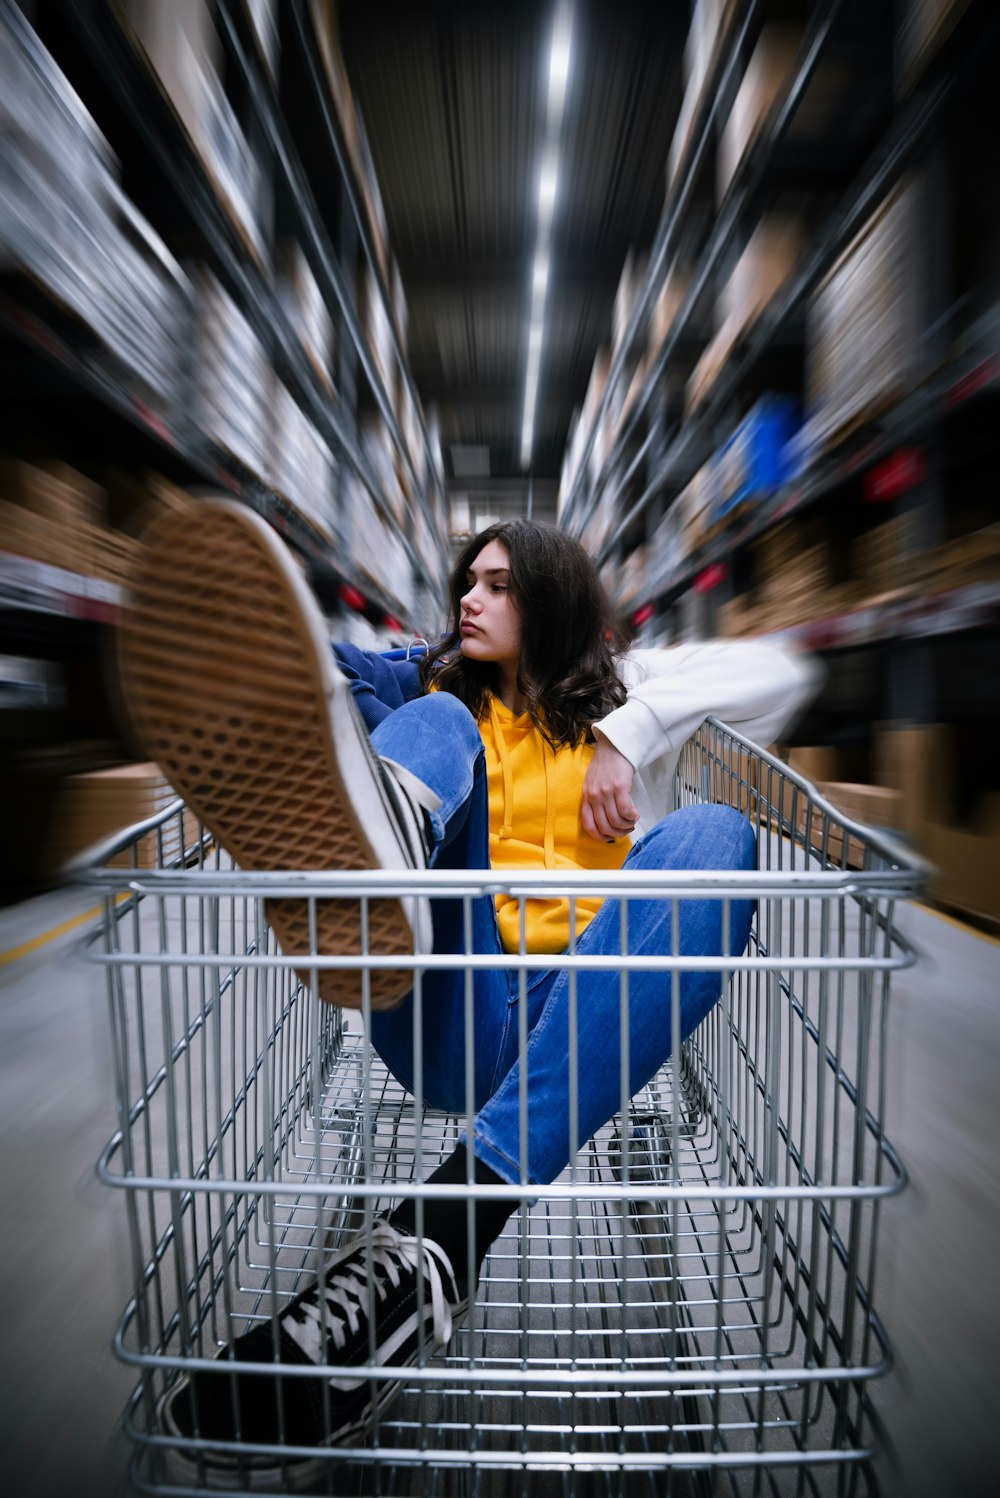 창고에서 쇼핑 카트를 타고 있는 여성의 선택적 사진